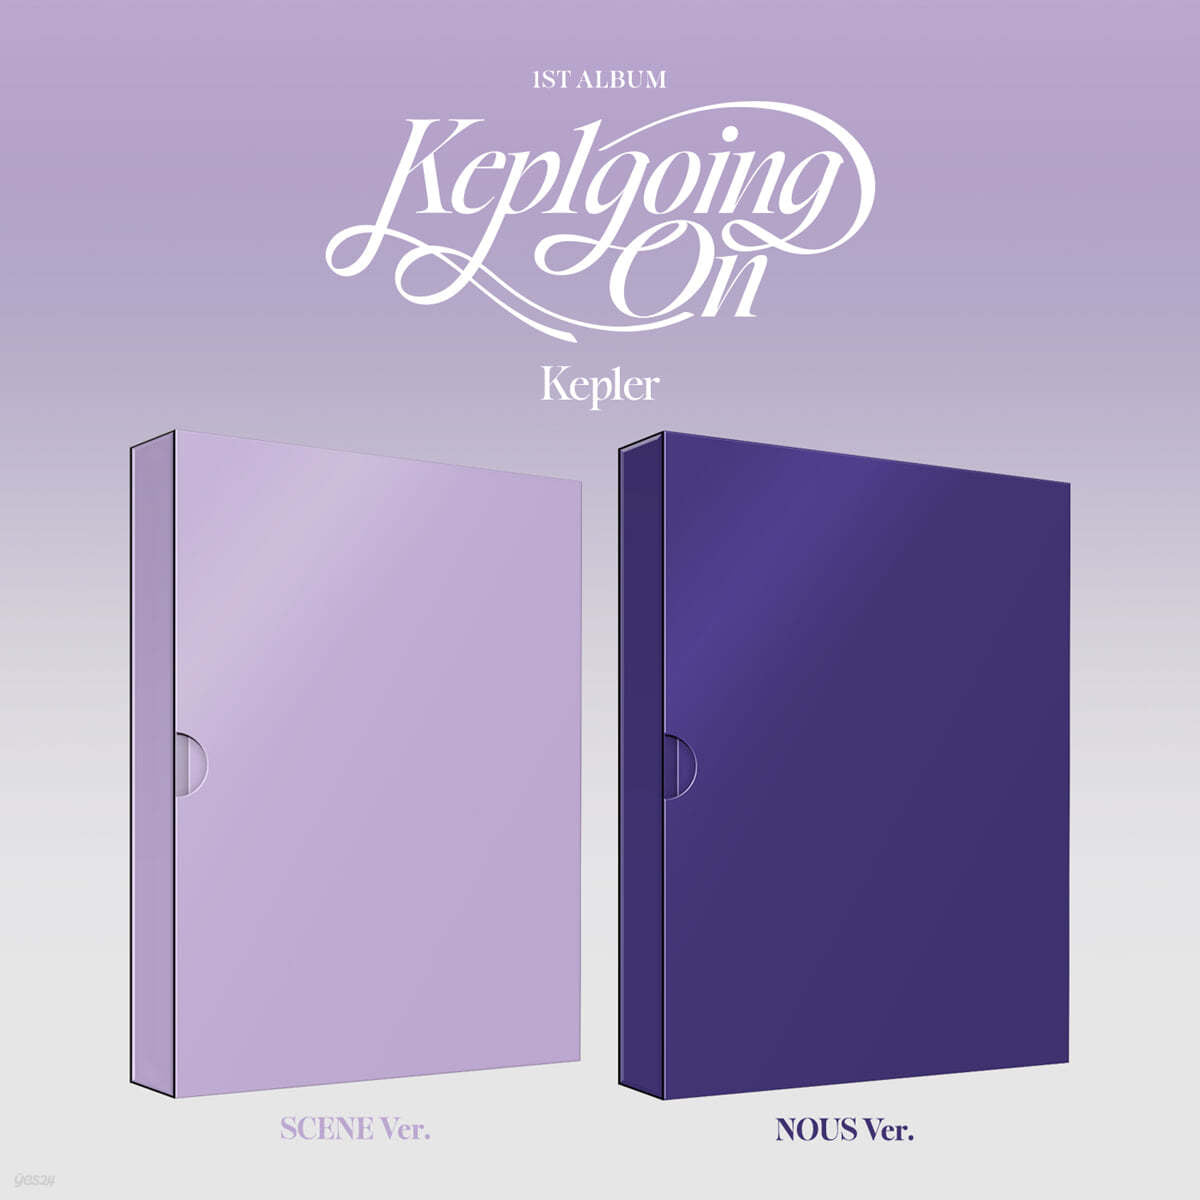 Kep1er 1st Album – Kep1going On (Random)